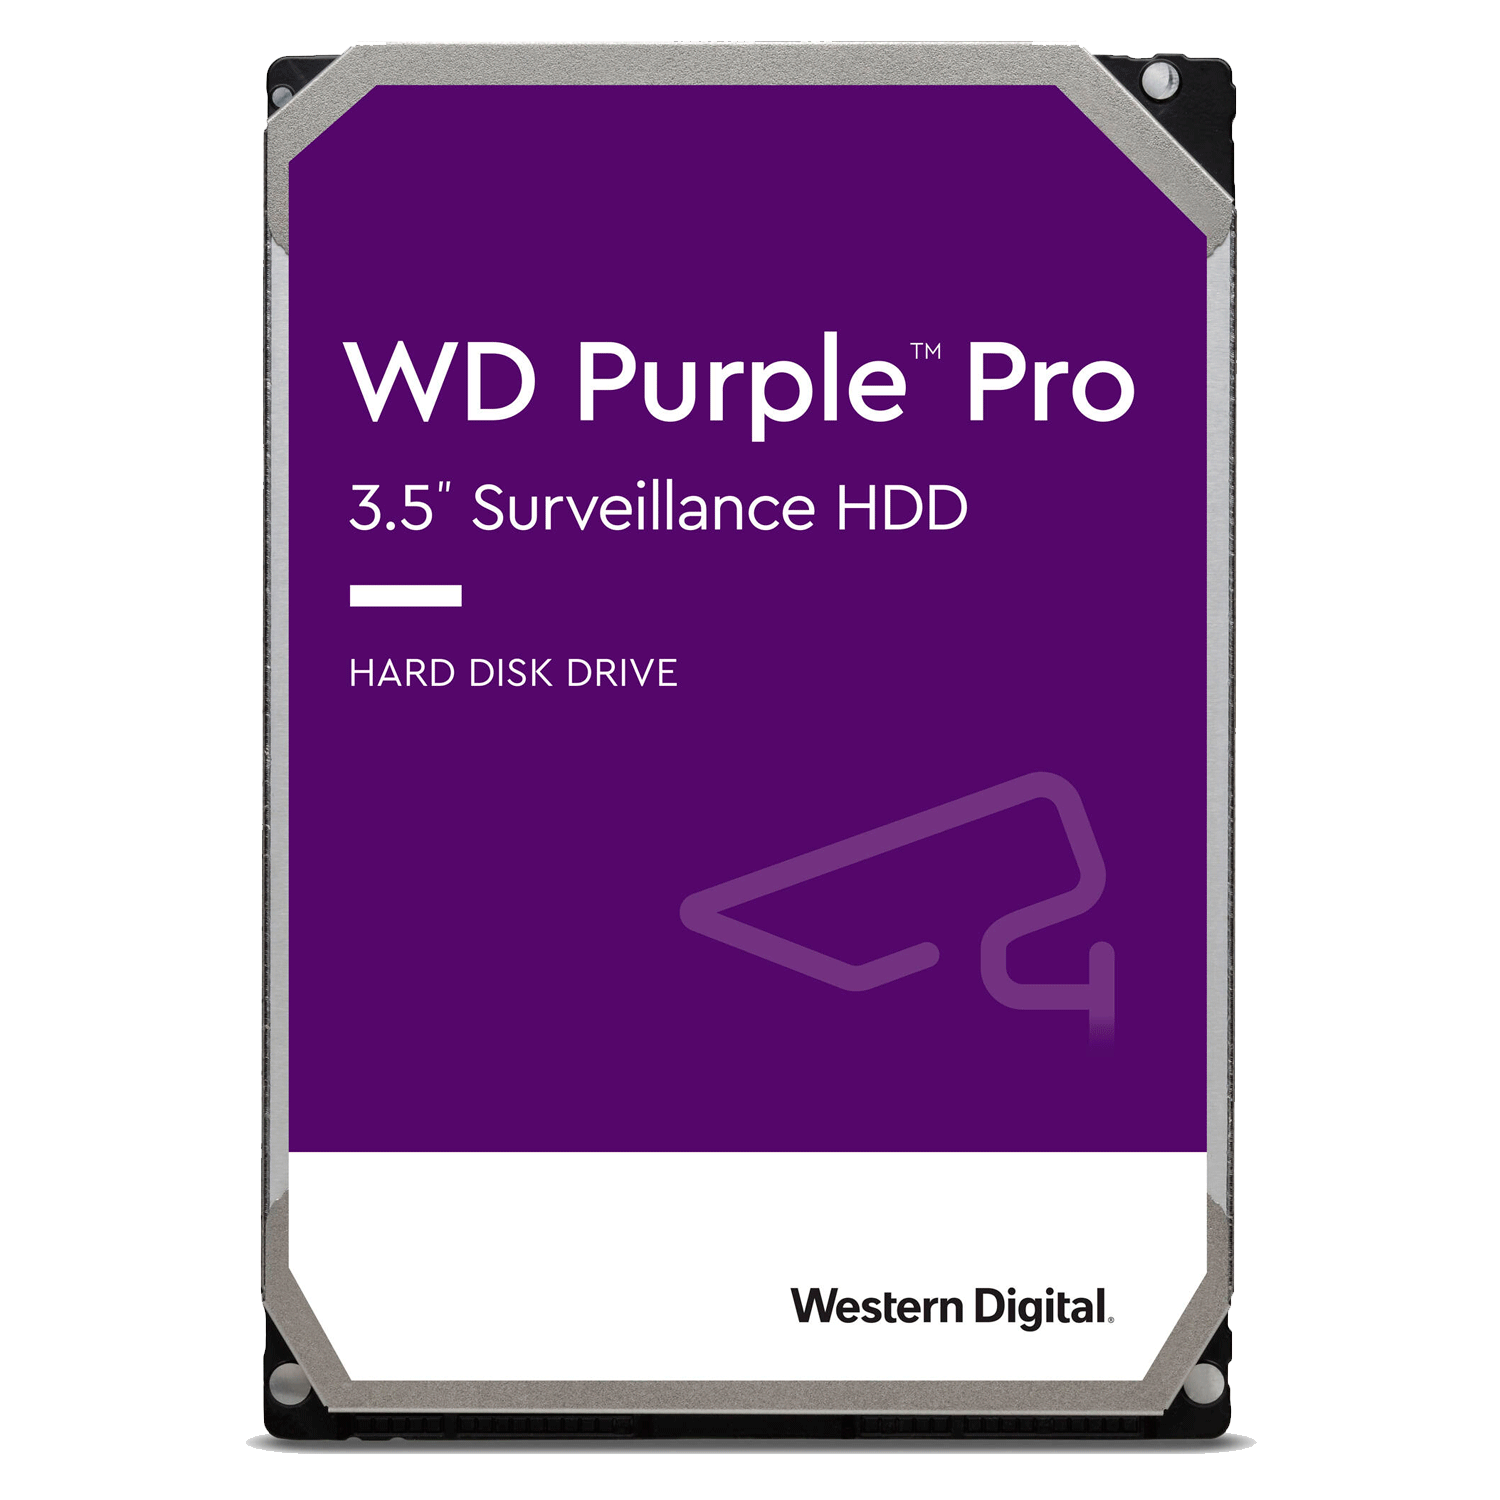 HD Western Digital Purple Pro 18TB / SATA 3 - (WD181PURP)